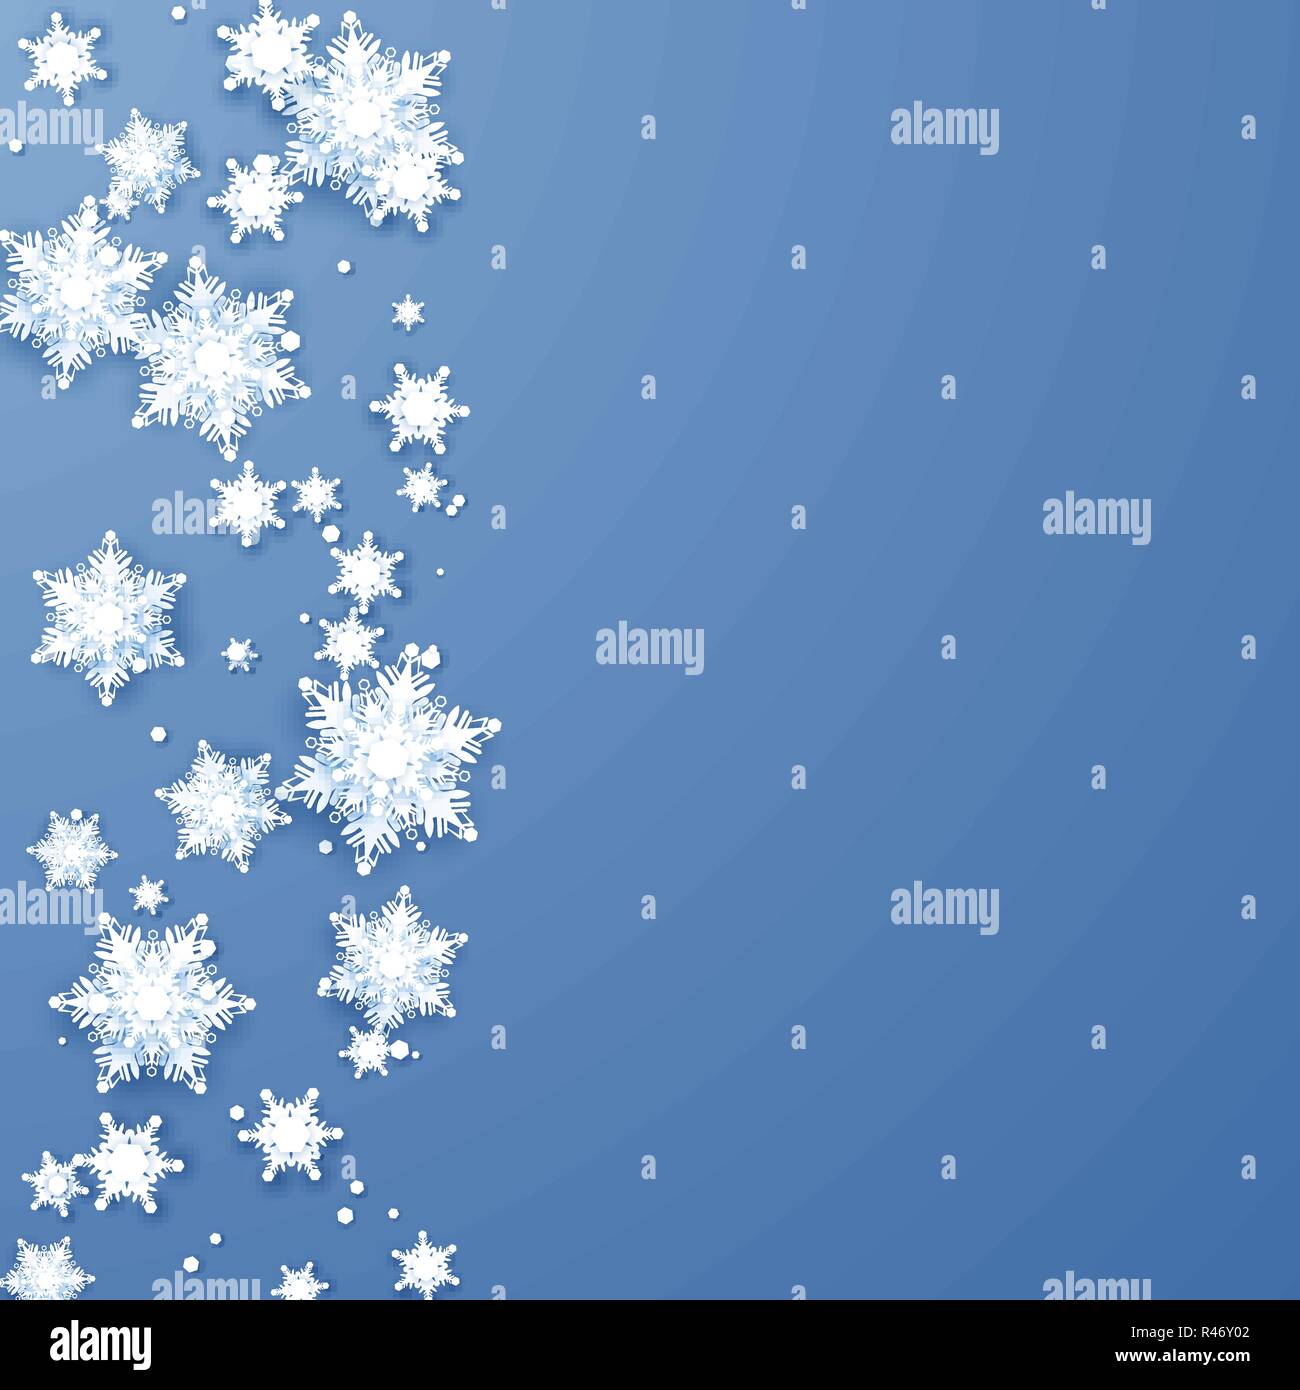 Origami Schneeflocken Grenze. Weihnachten und Neujahr Urlaub Dekoration Element. Vector Illustration auf blauem Hintergrund isoliert Stock Vektor